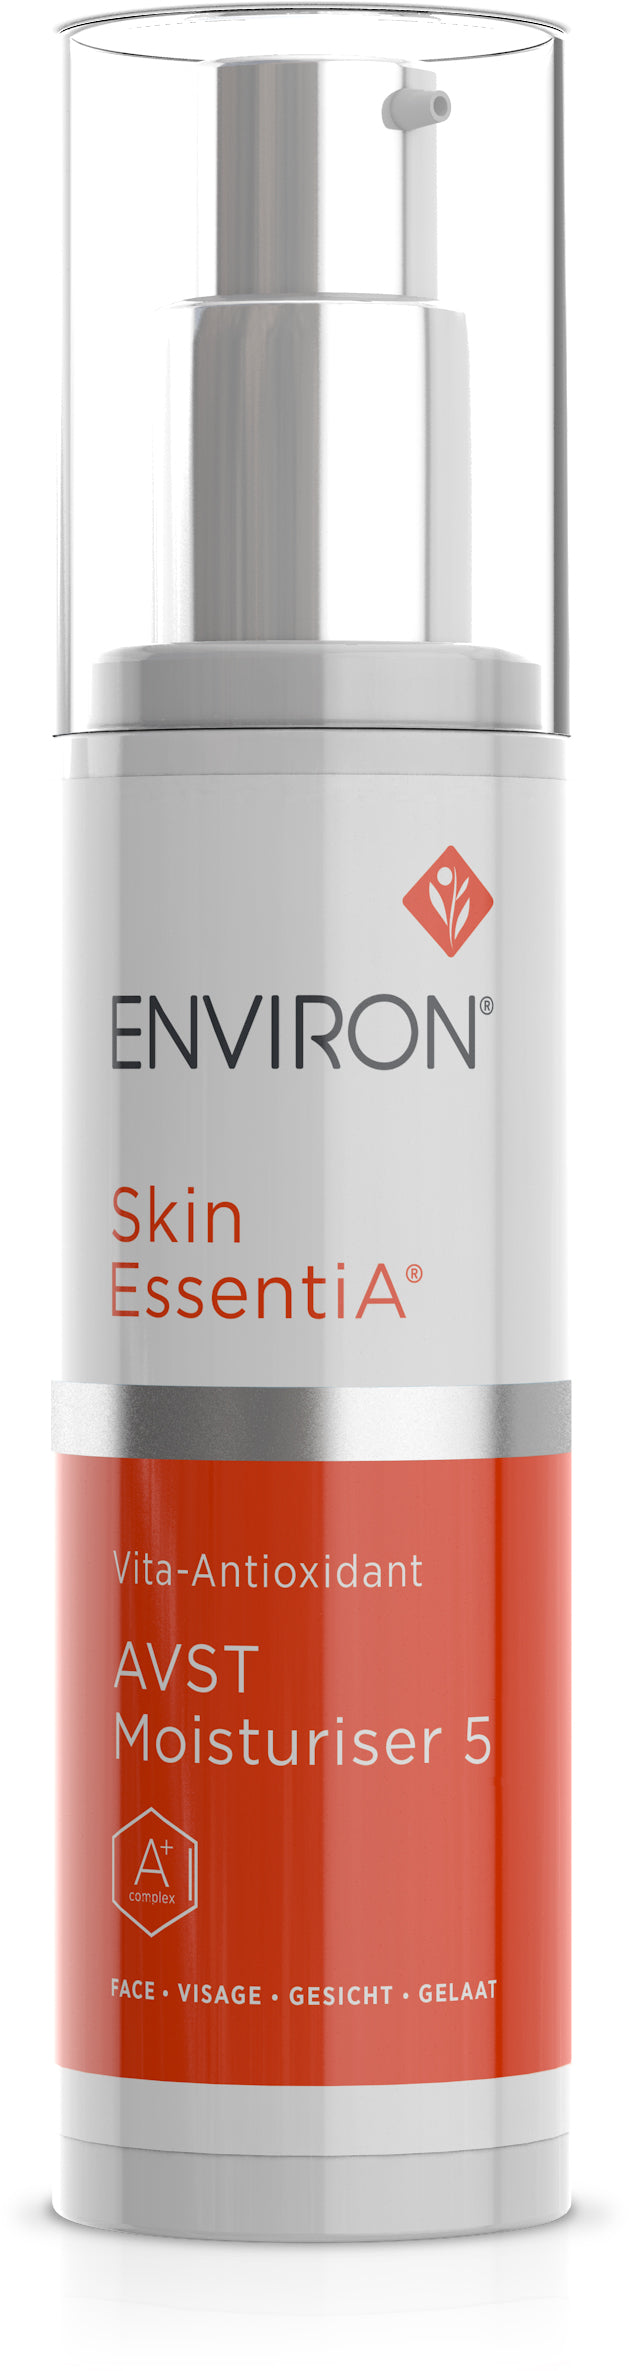 Skin EssentiA | Vita-Antioxidant | AVST Moisturiser 5